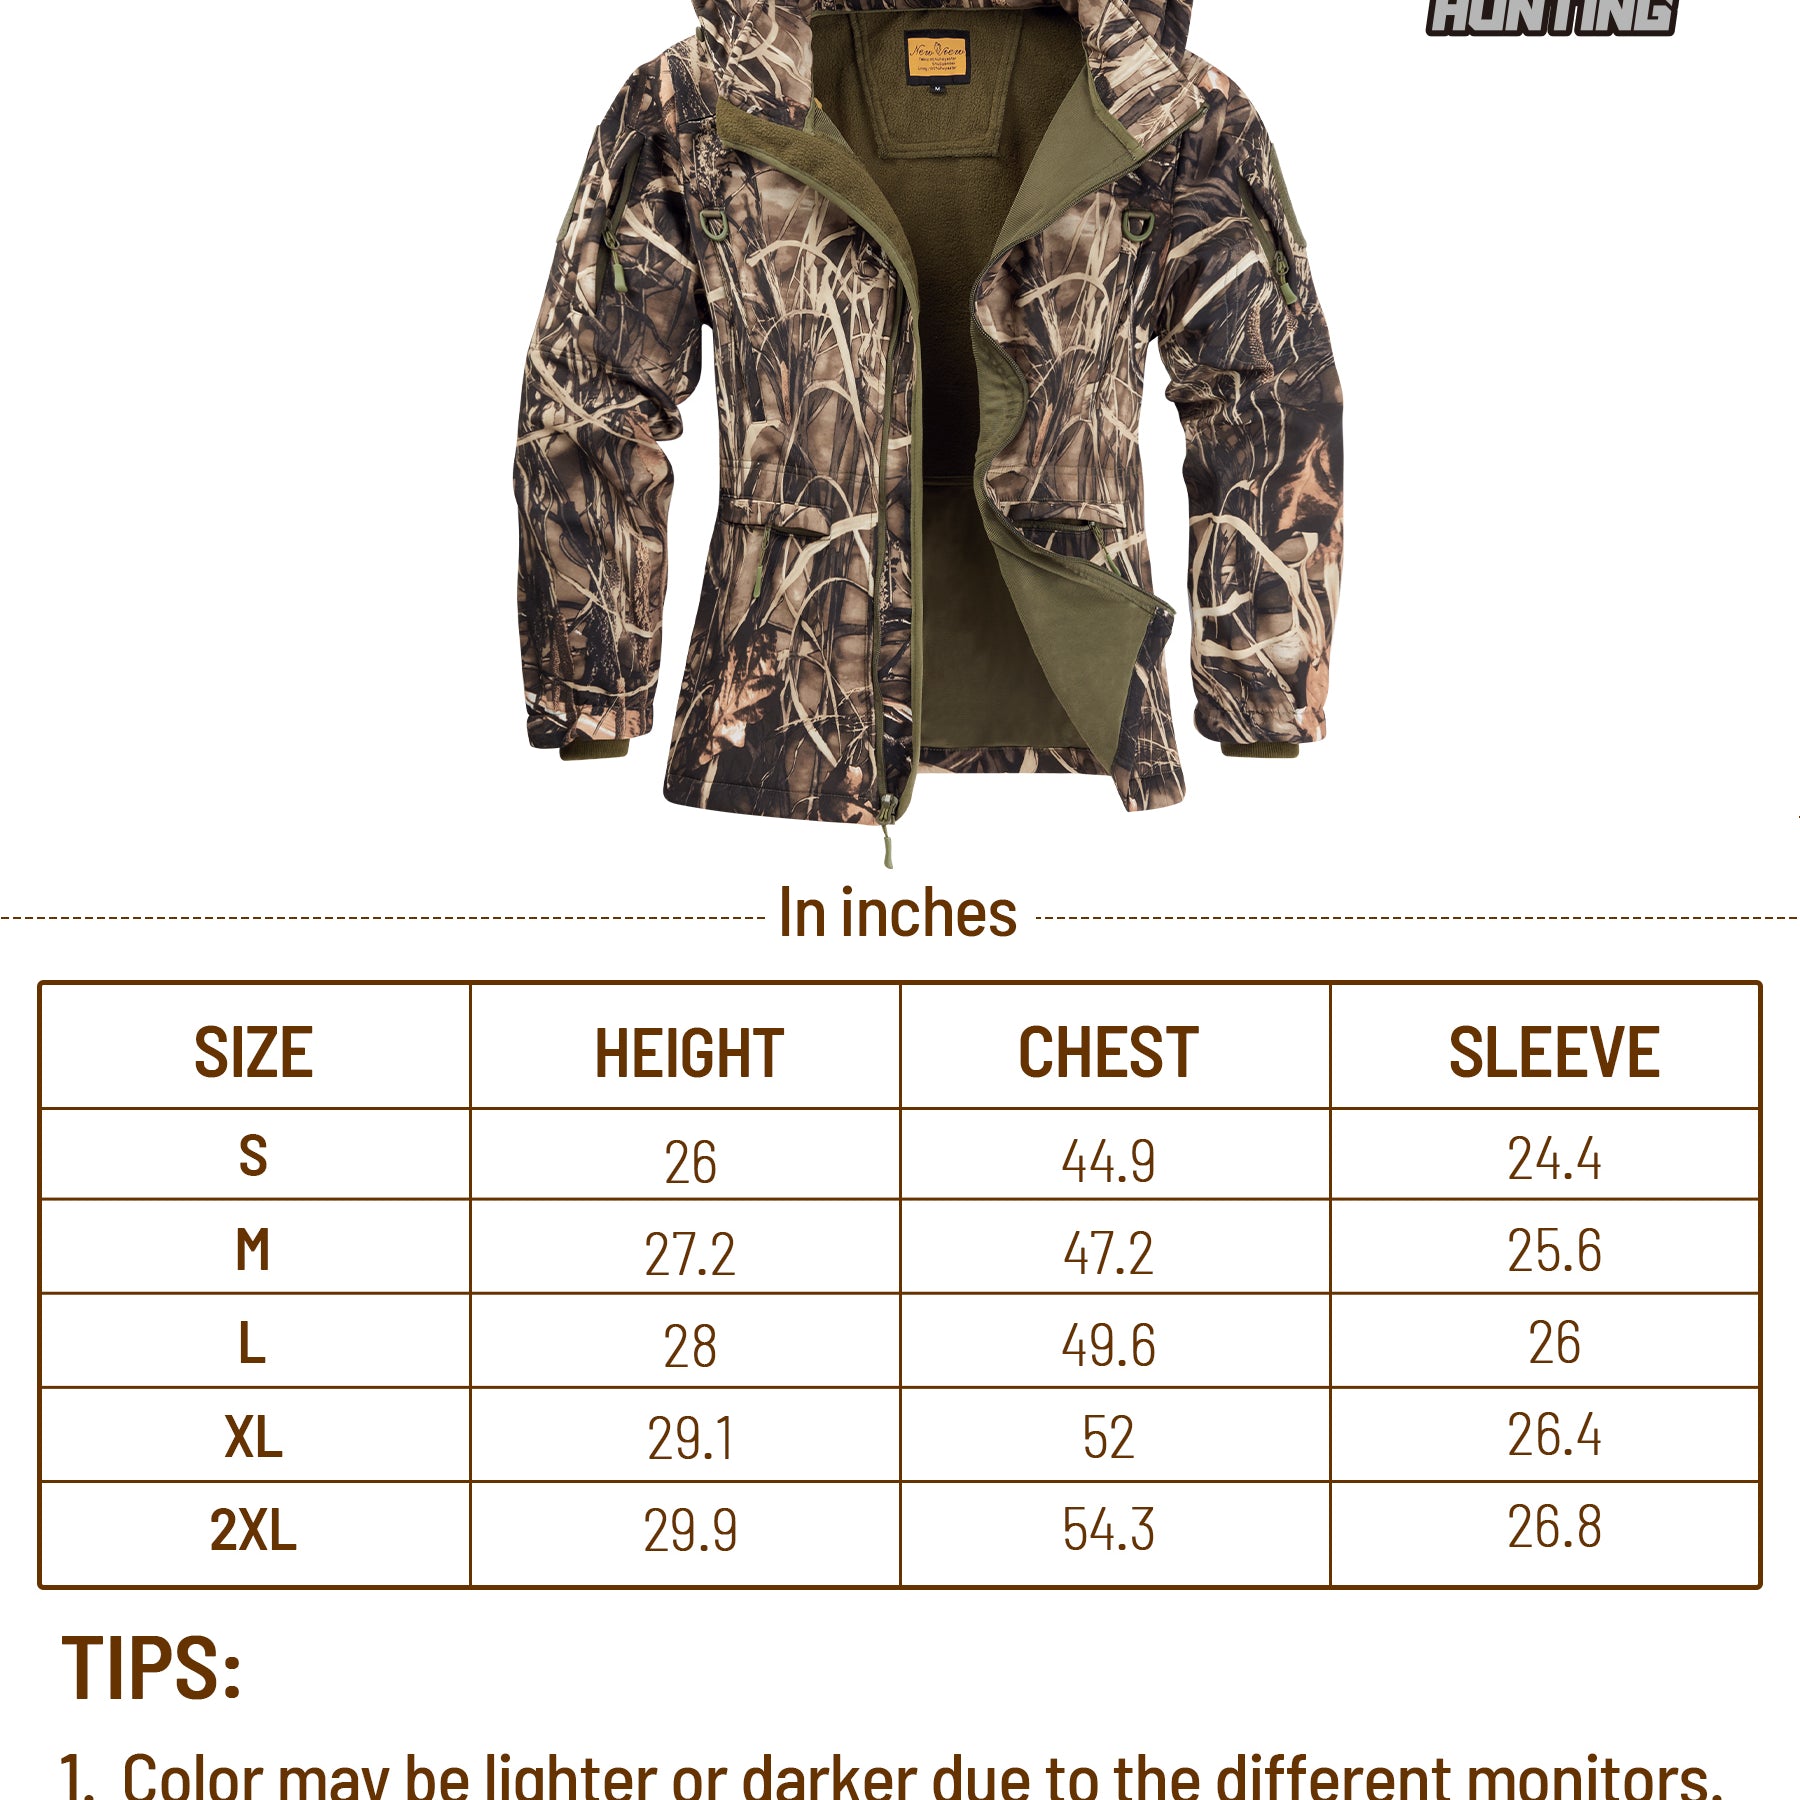  NEW VIEW Ropa de caza para mujer, chaqueta de caza de